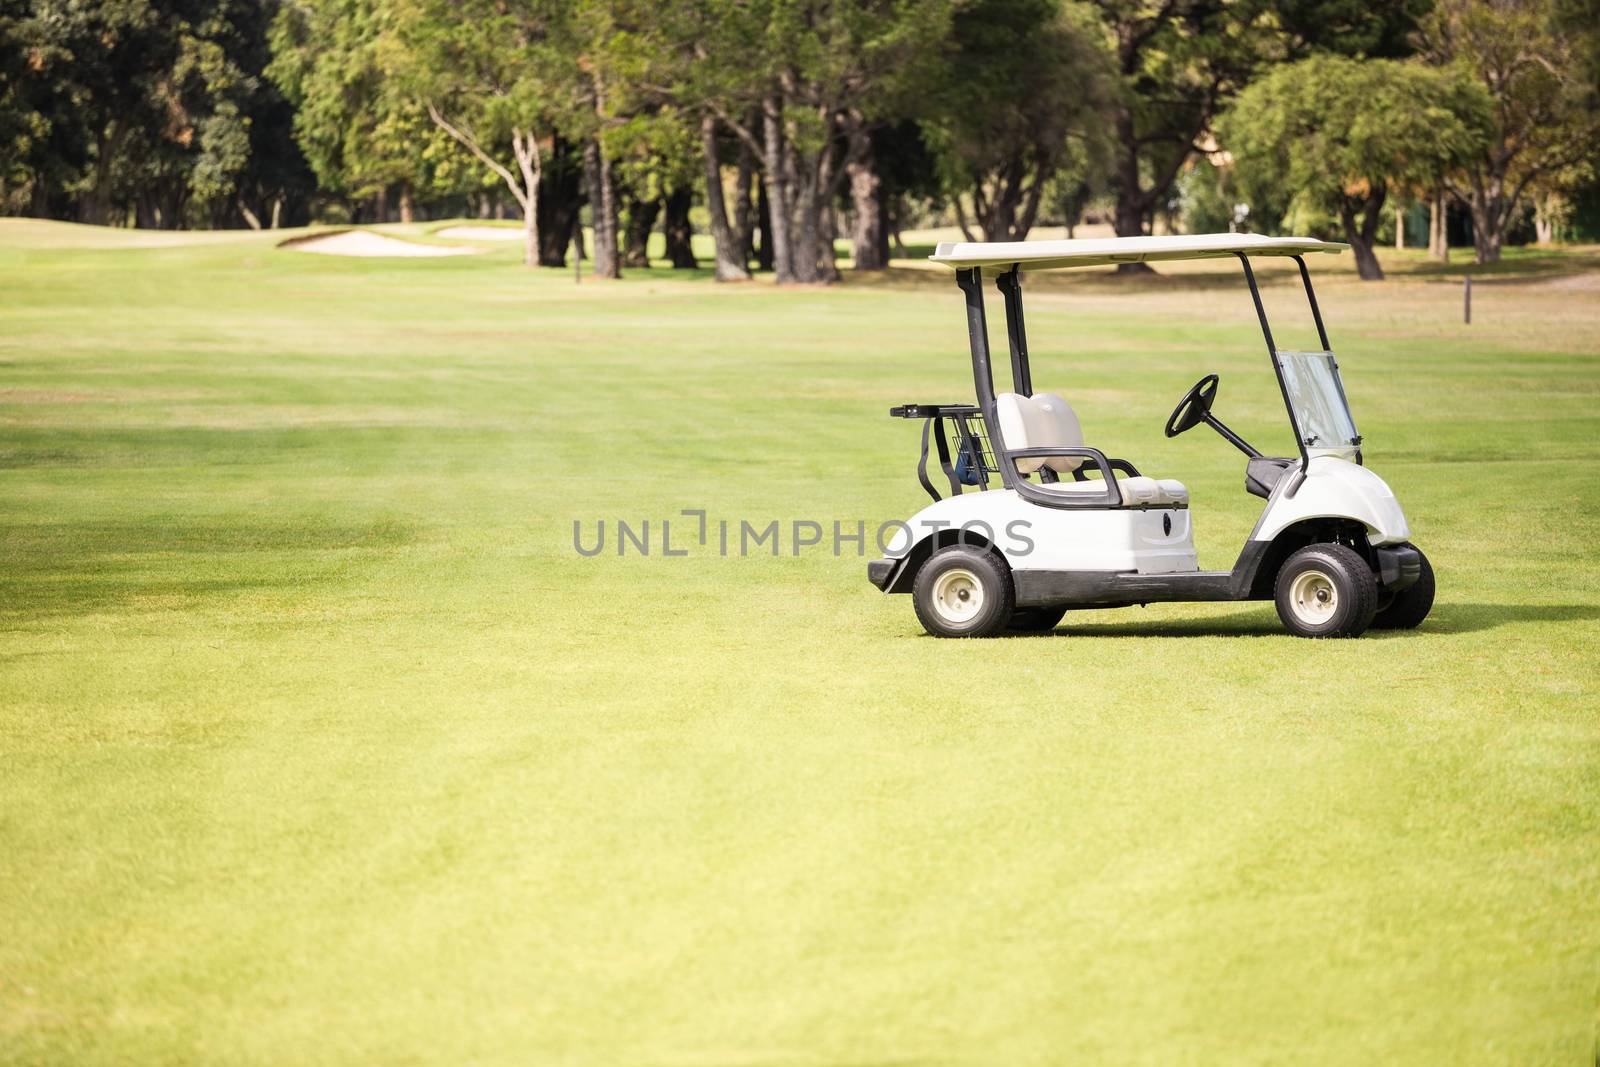 Alone golf buggy on golf course by Wavebreakmedia